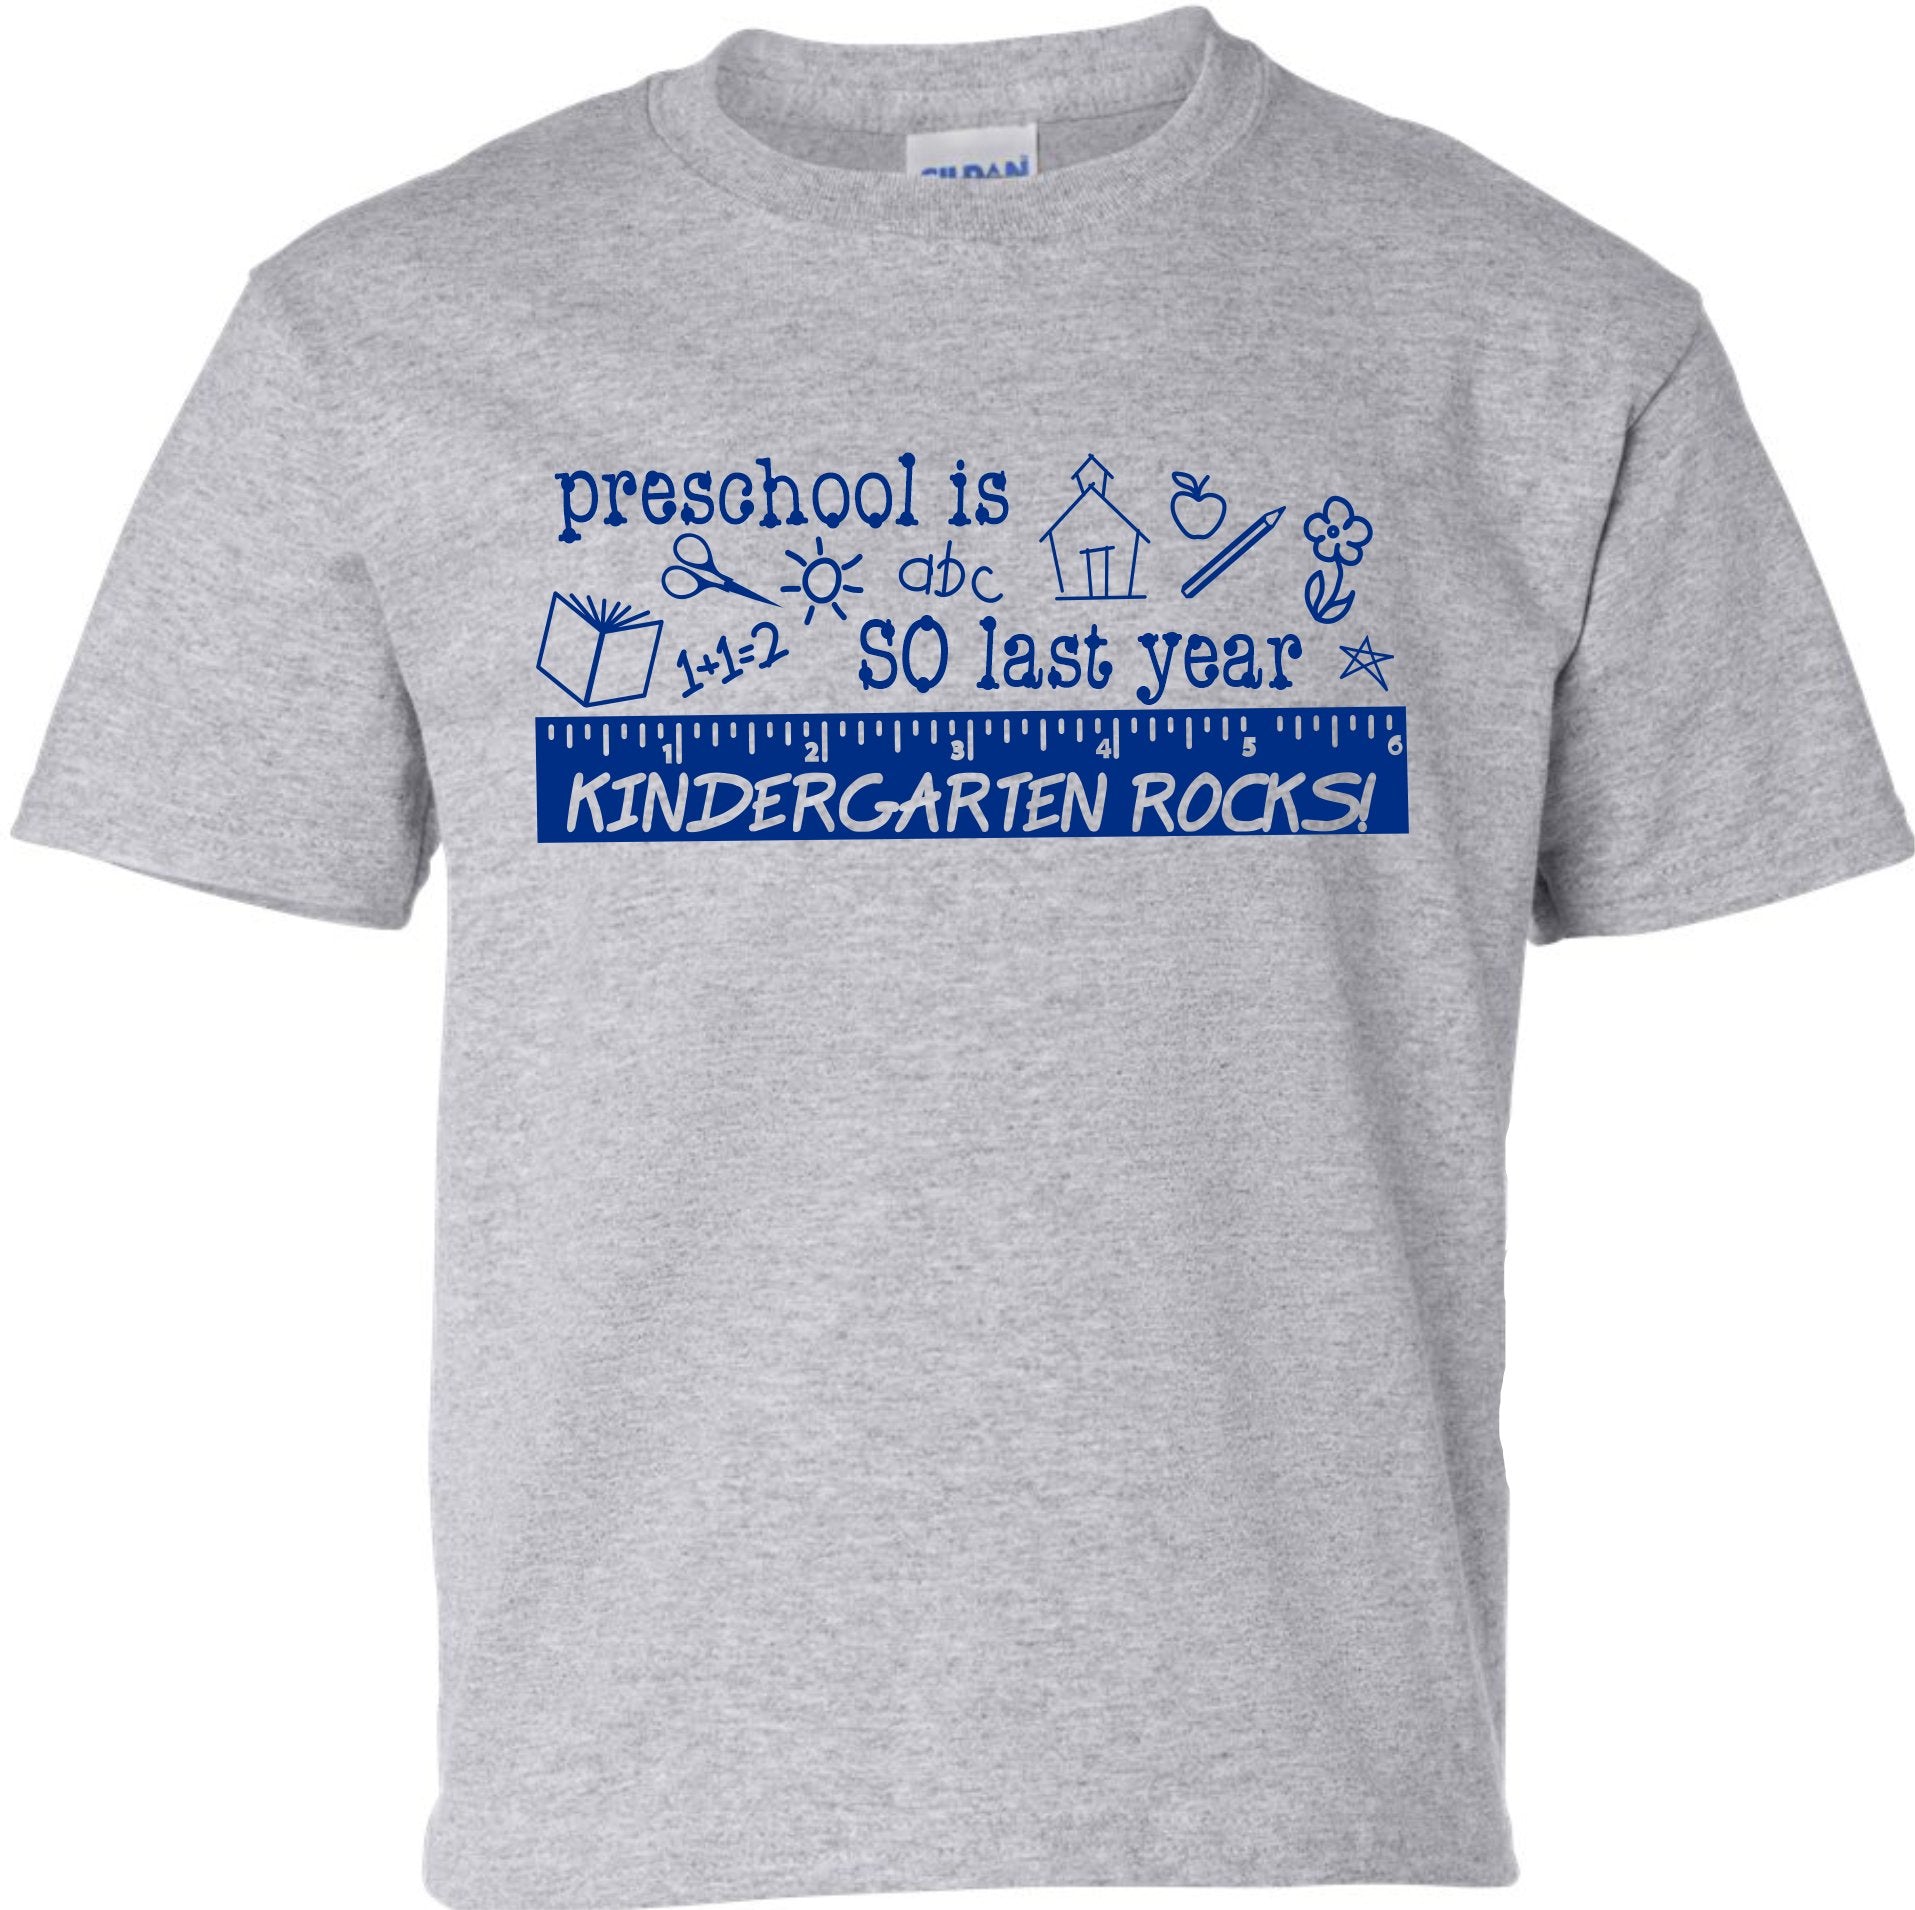 Preschool is so last year, KINDERGARTEN rocks! T shirt - SBS T Shop